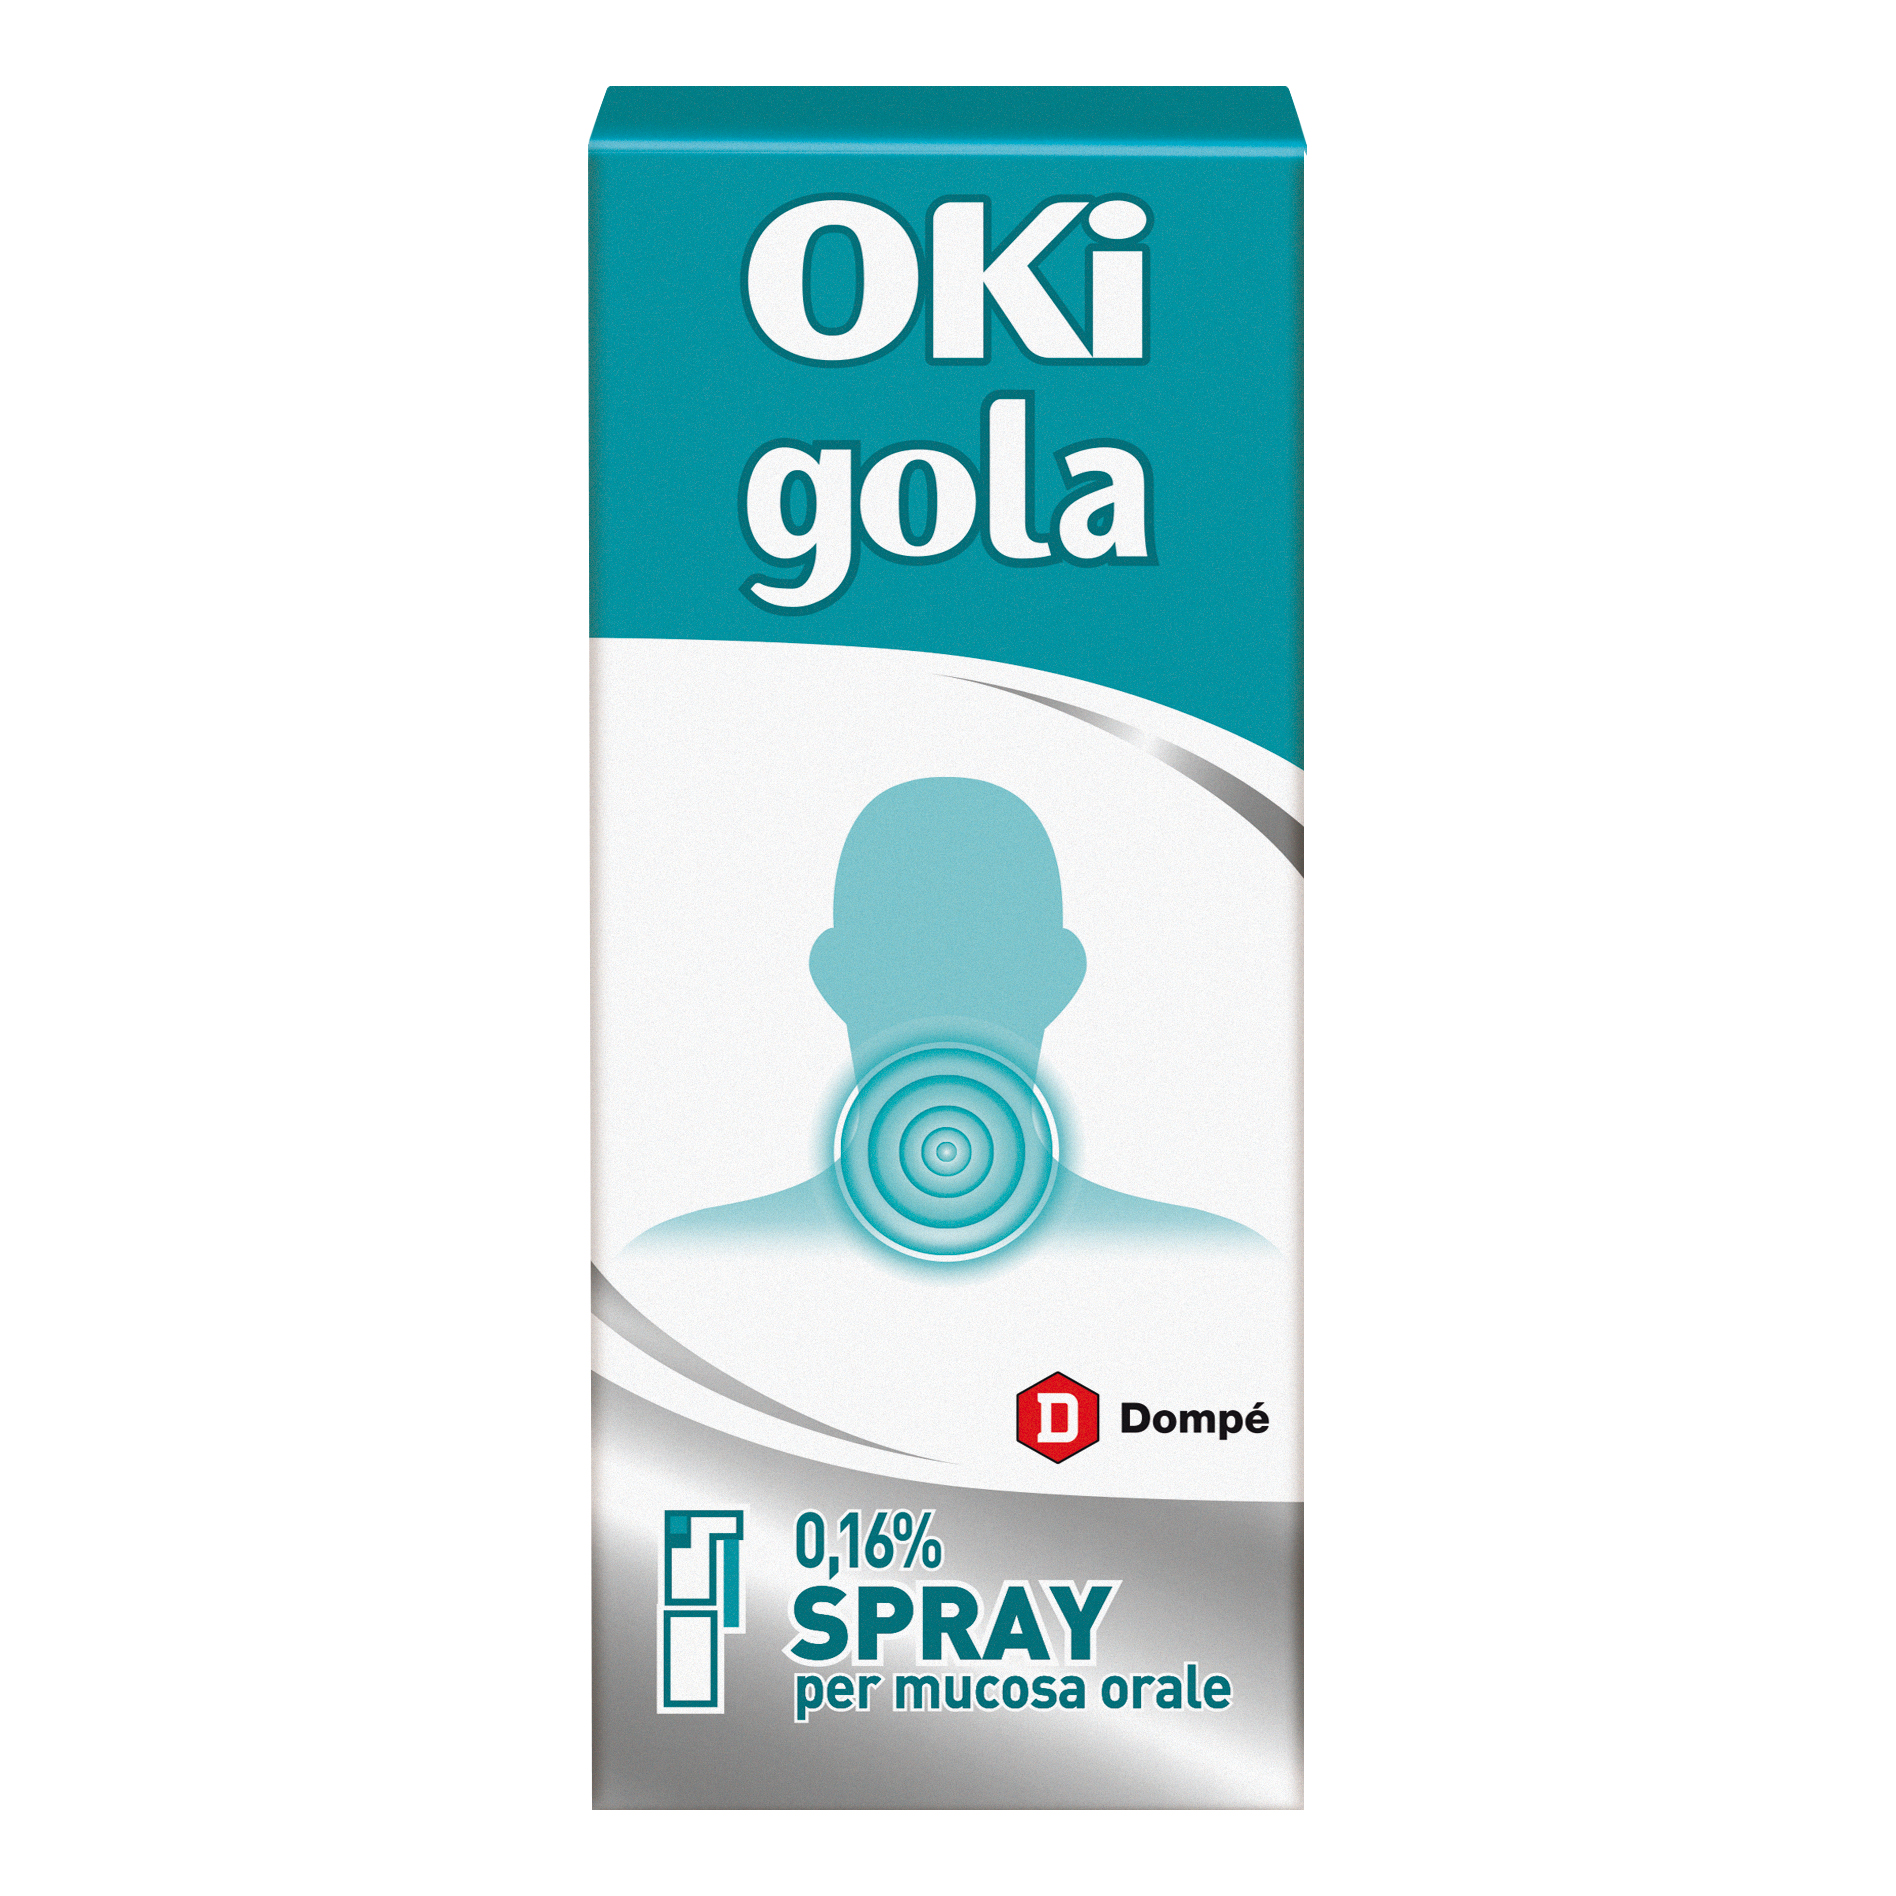 OKI GOLA SPRAY 15ML 0,16%